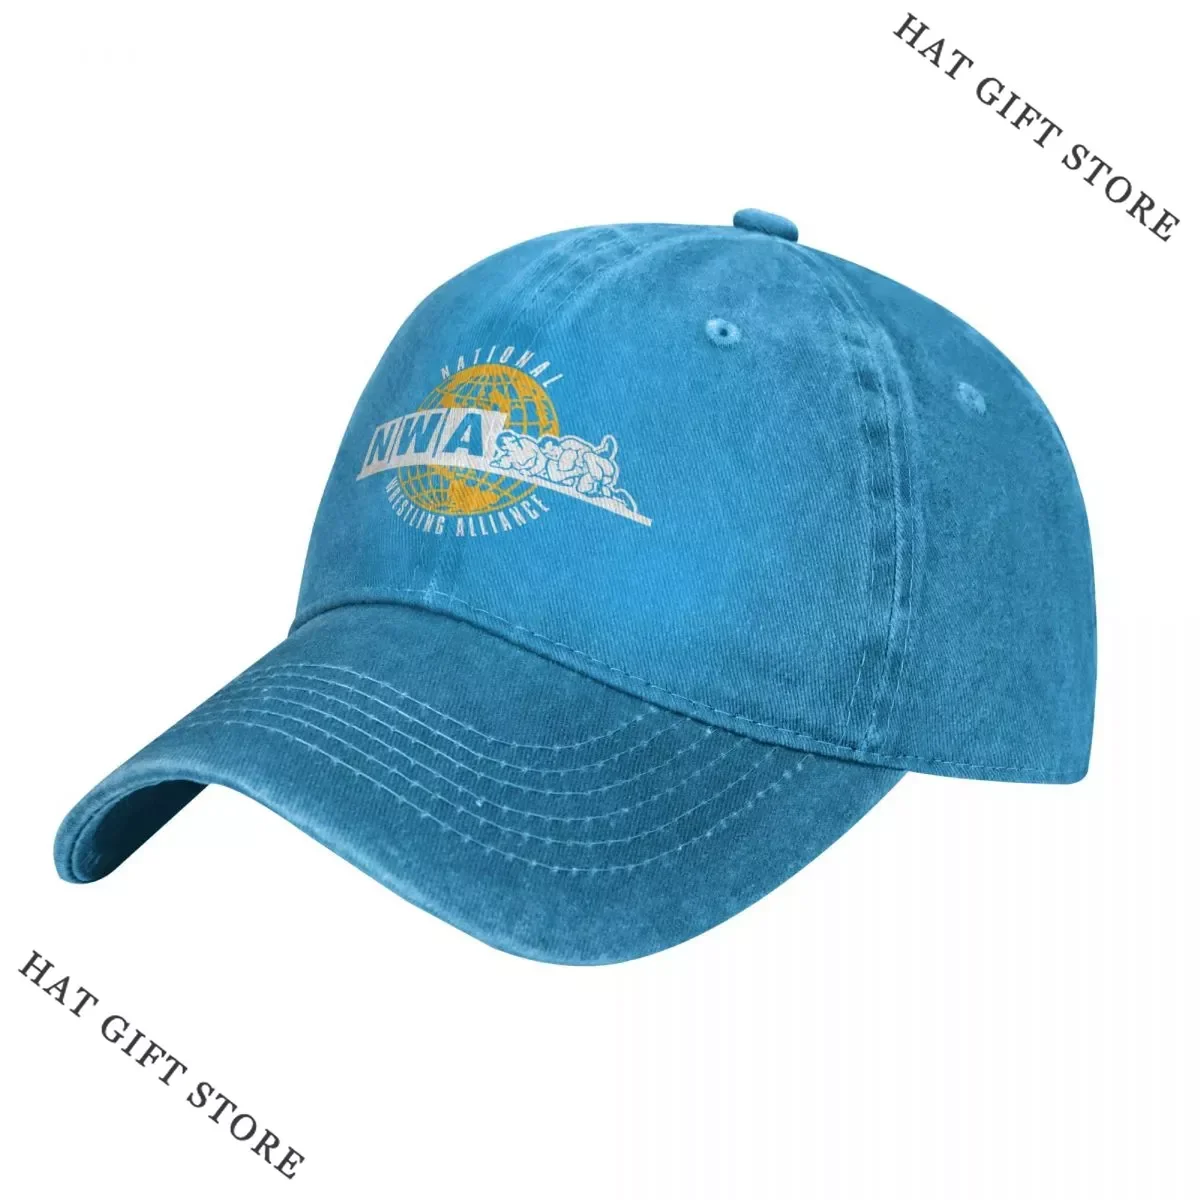 

Hot NWA - National Wrestling Alliance Baseball Cap Trucker Hats Caps Sunhat Horse Hat Baseball Cap For Men Women'S